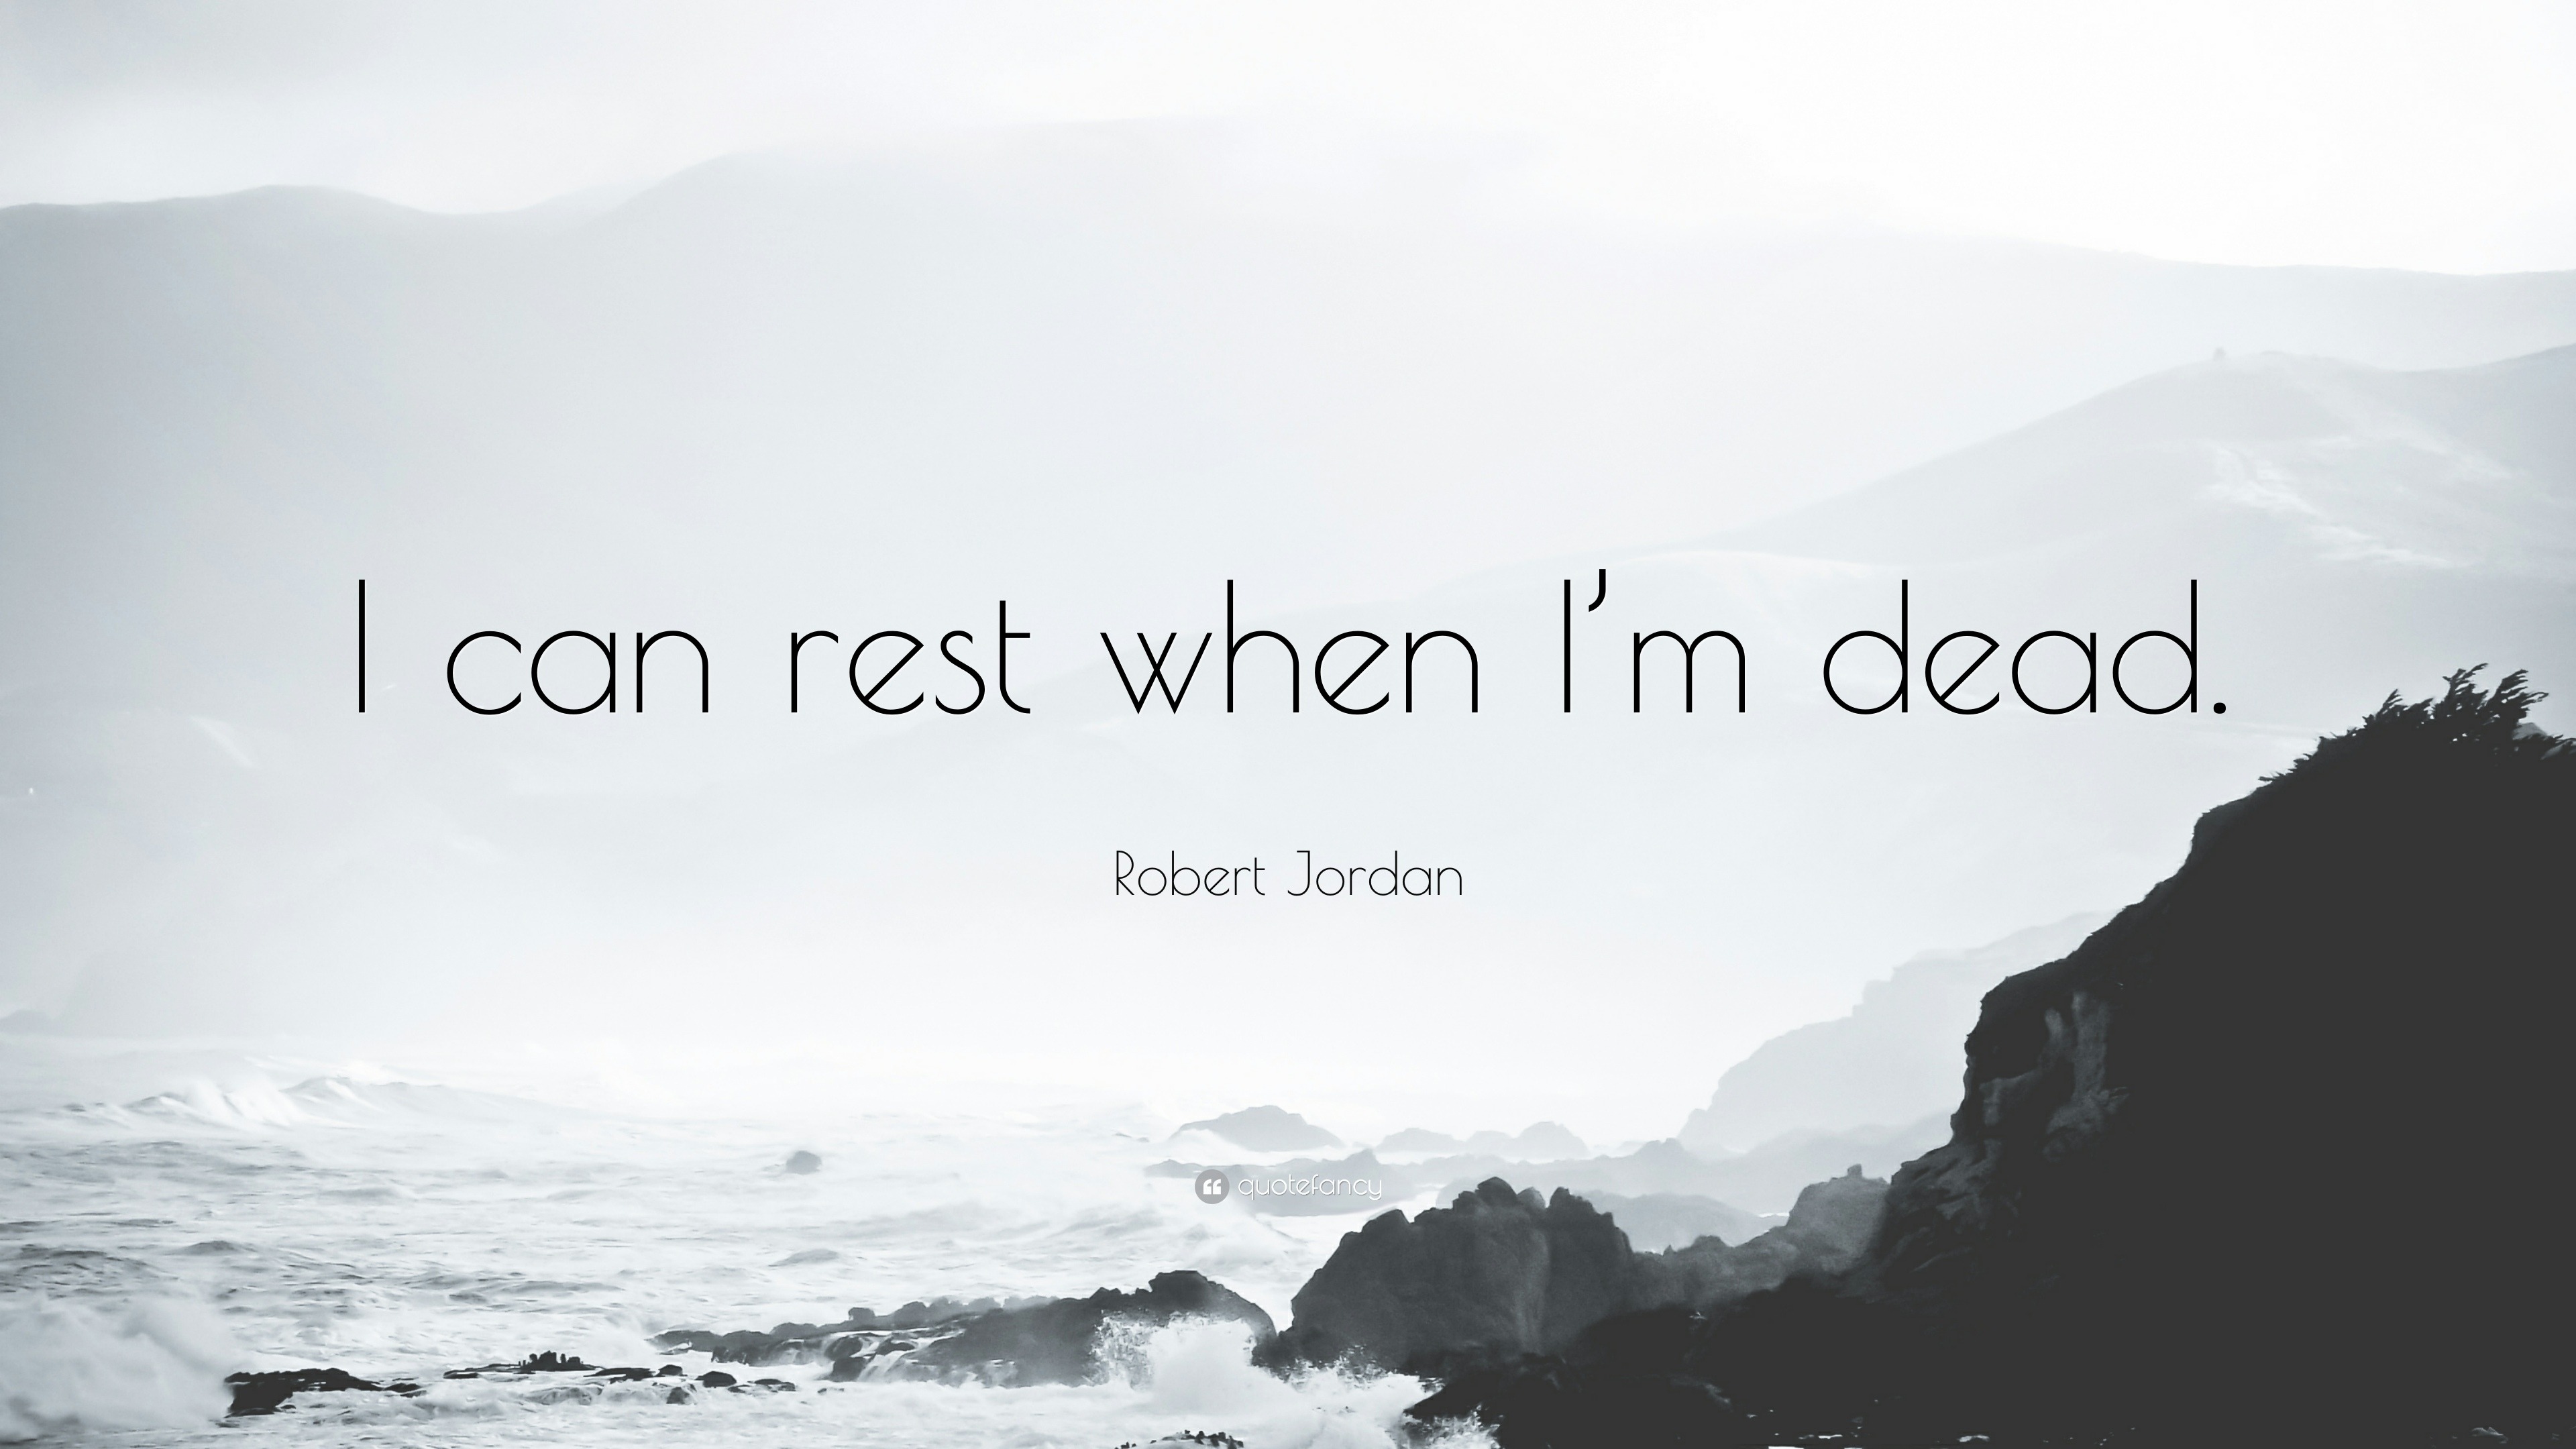 Robert Jordan Quote: “I Can Rest When I'm Dead.”